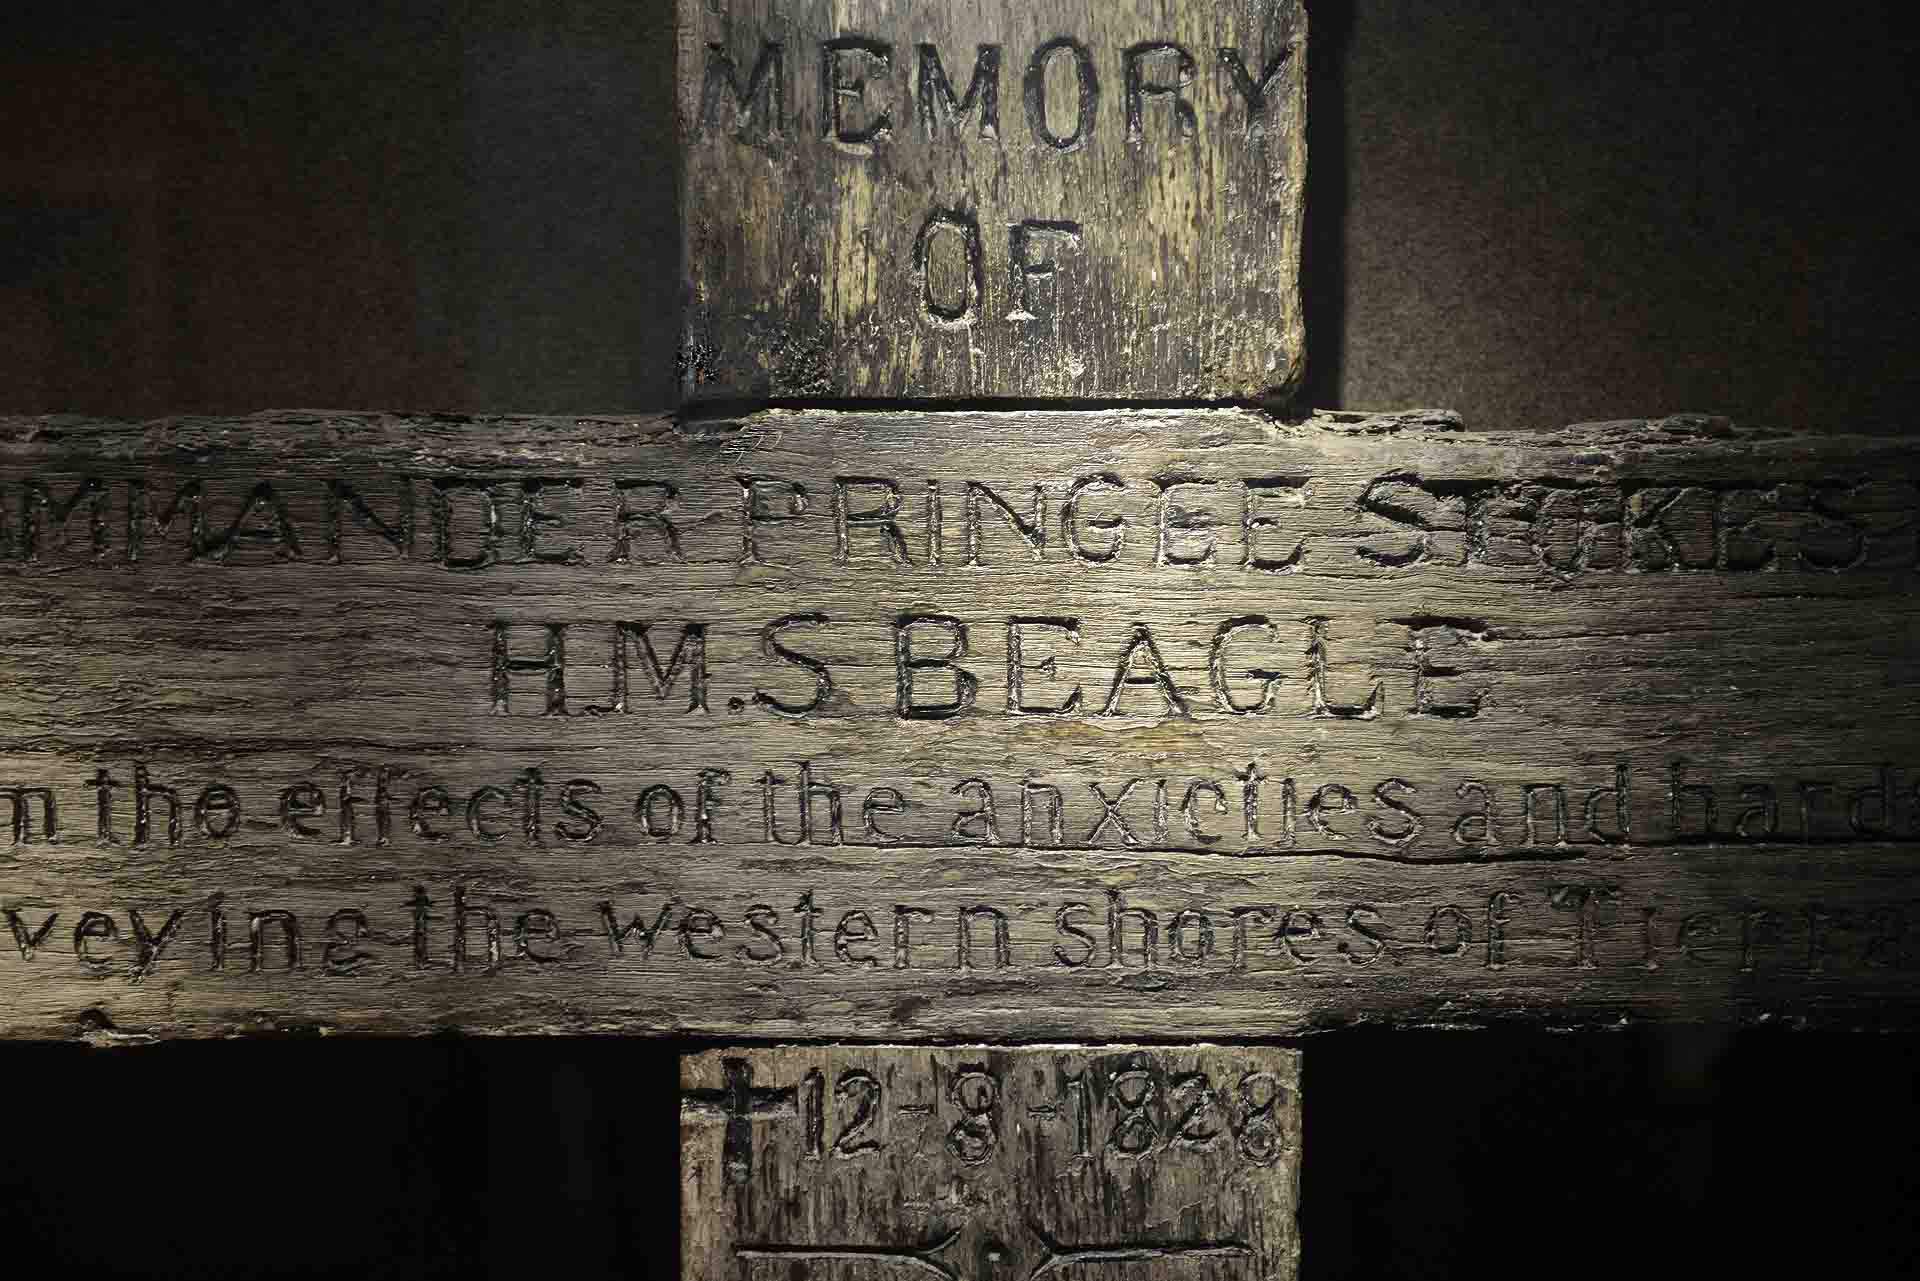 Cruz de la sepultura del capitán Pringle Strokes, que comandó el Beagle en su primer viaje por la zona, en el que se llevarían a Inglaterra a varios yaganes, y que se acabó suicidando antes de regresar / Foto: Alfons Rodríguez